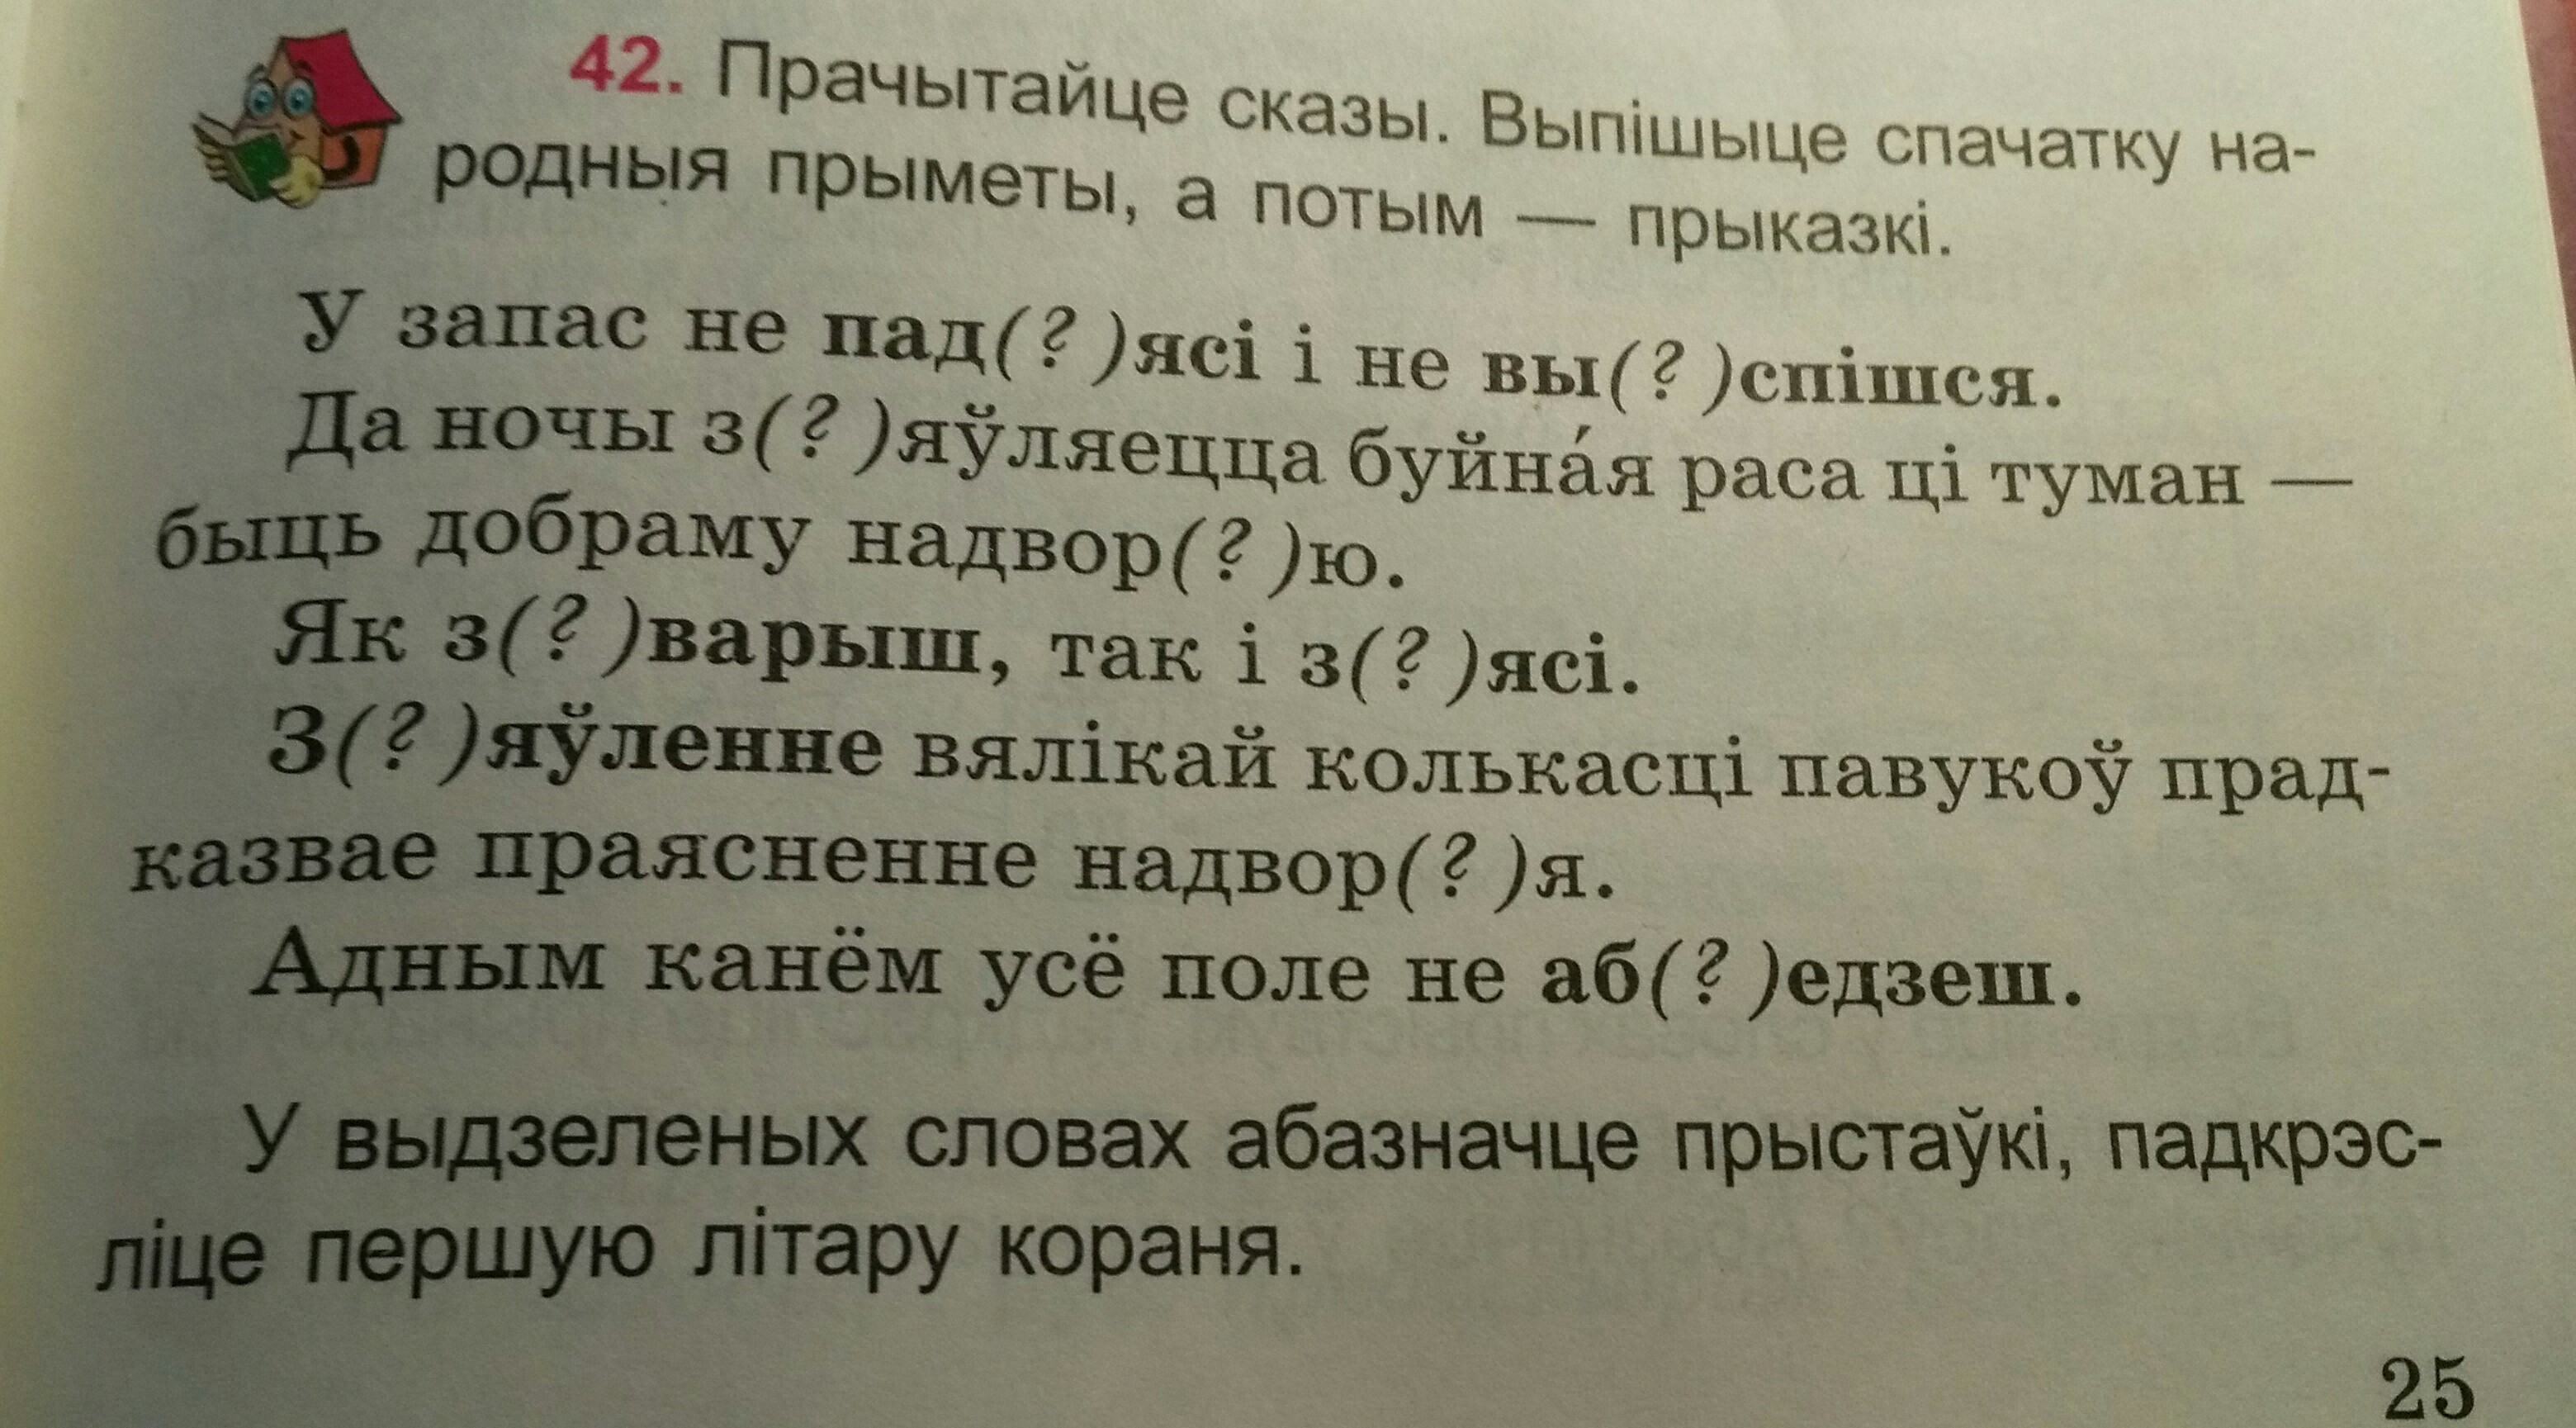 члены сказа в белорусском языке фото 97